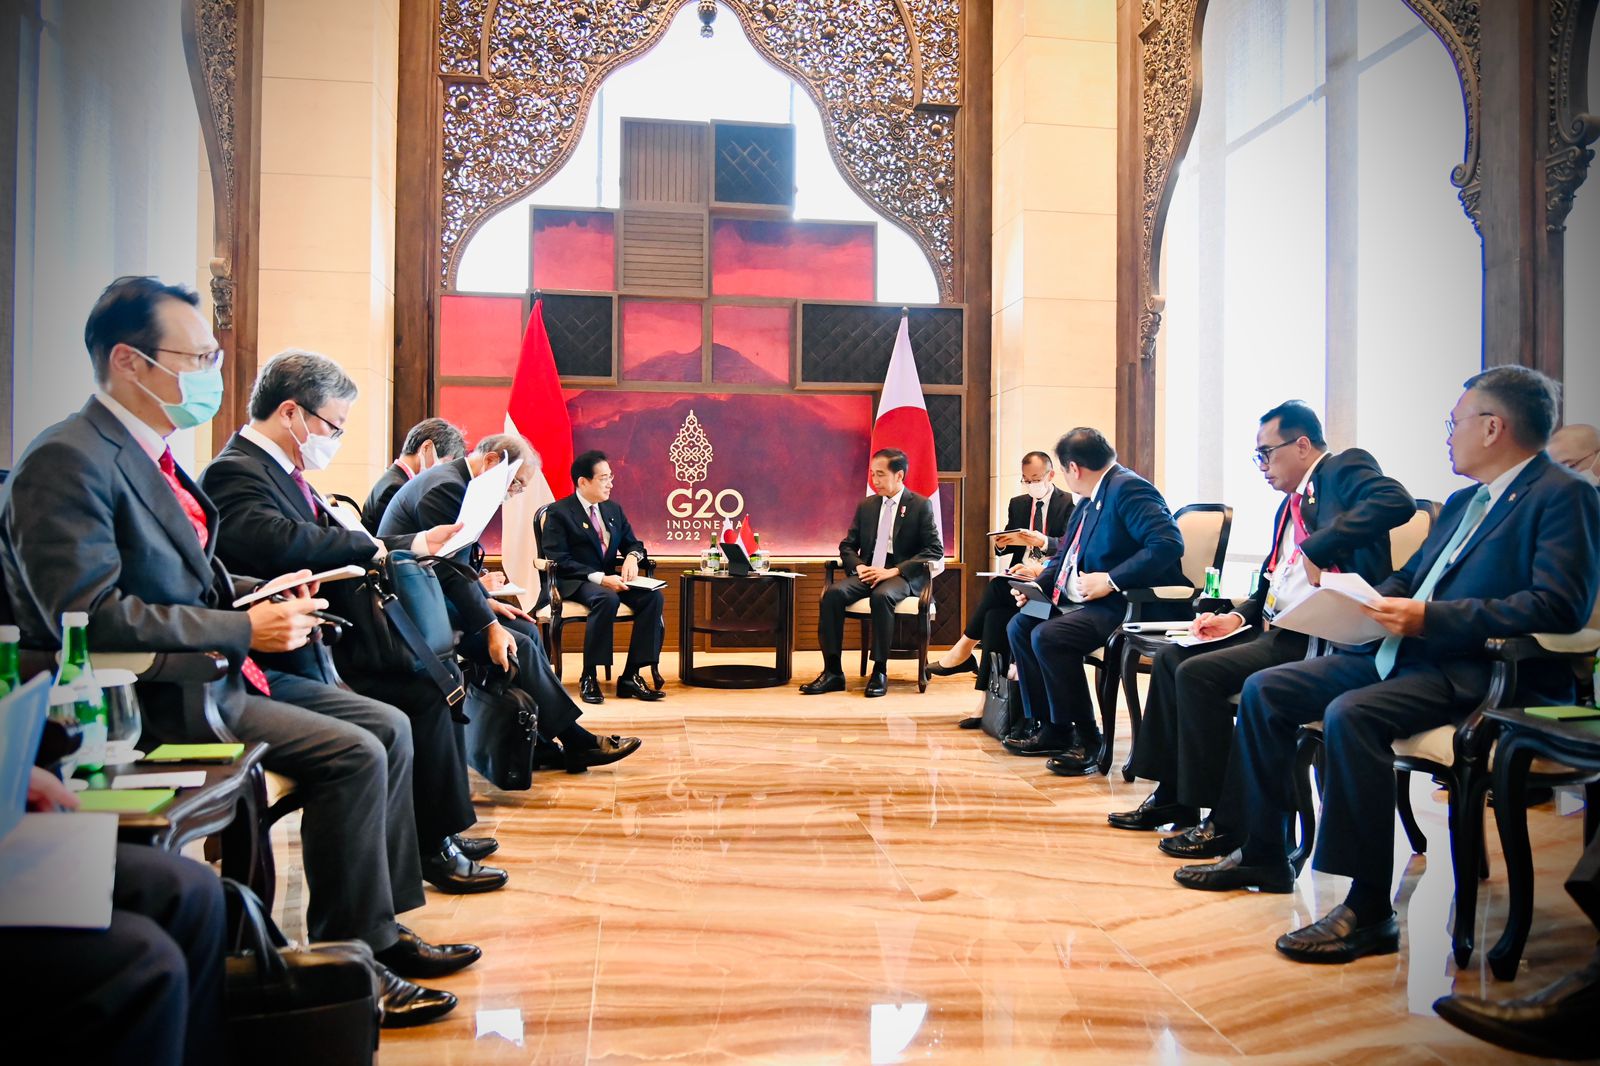 Presiden Jokowi Lakukan Pertemuan Bilateral dengan PM Jepang